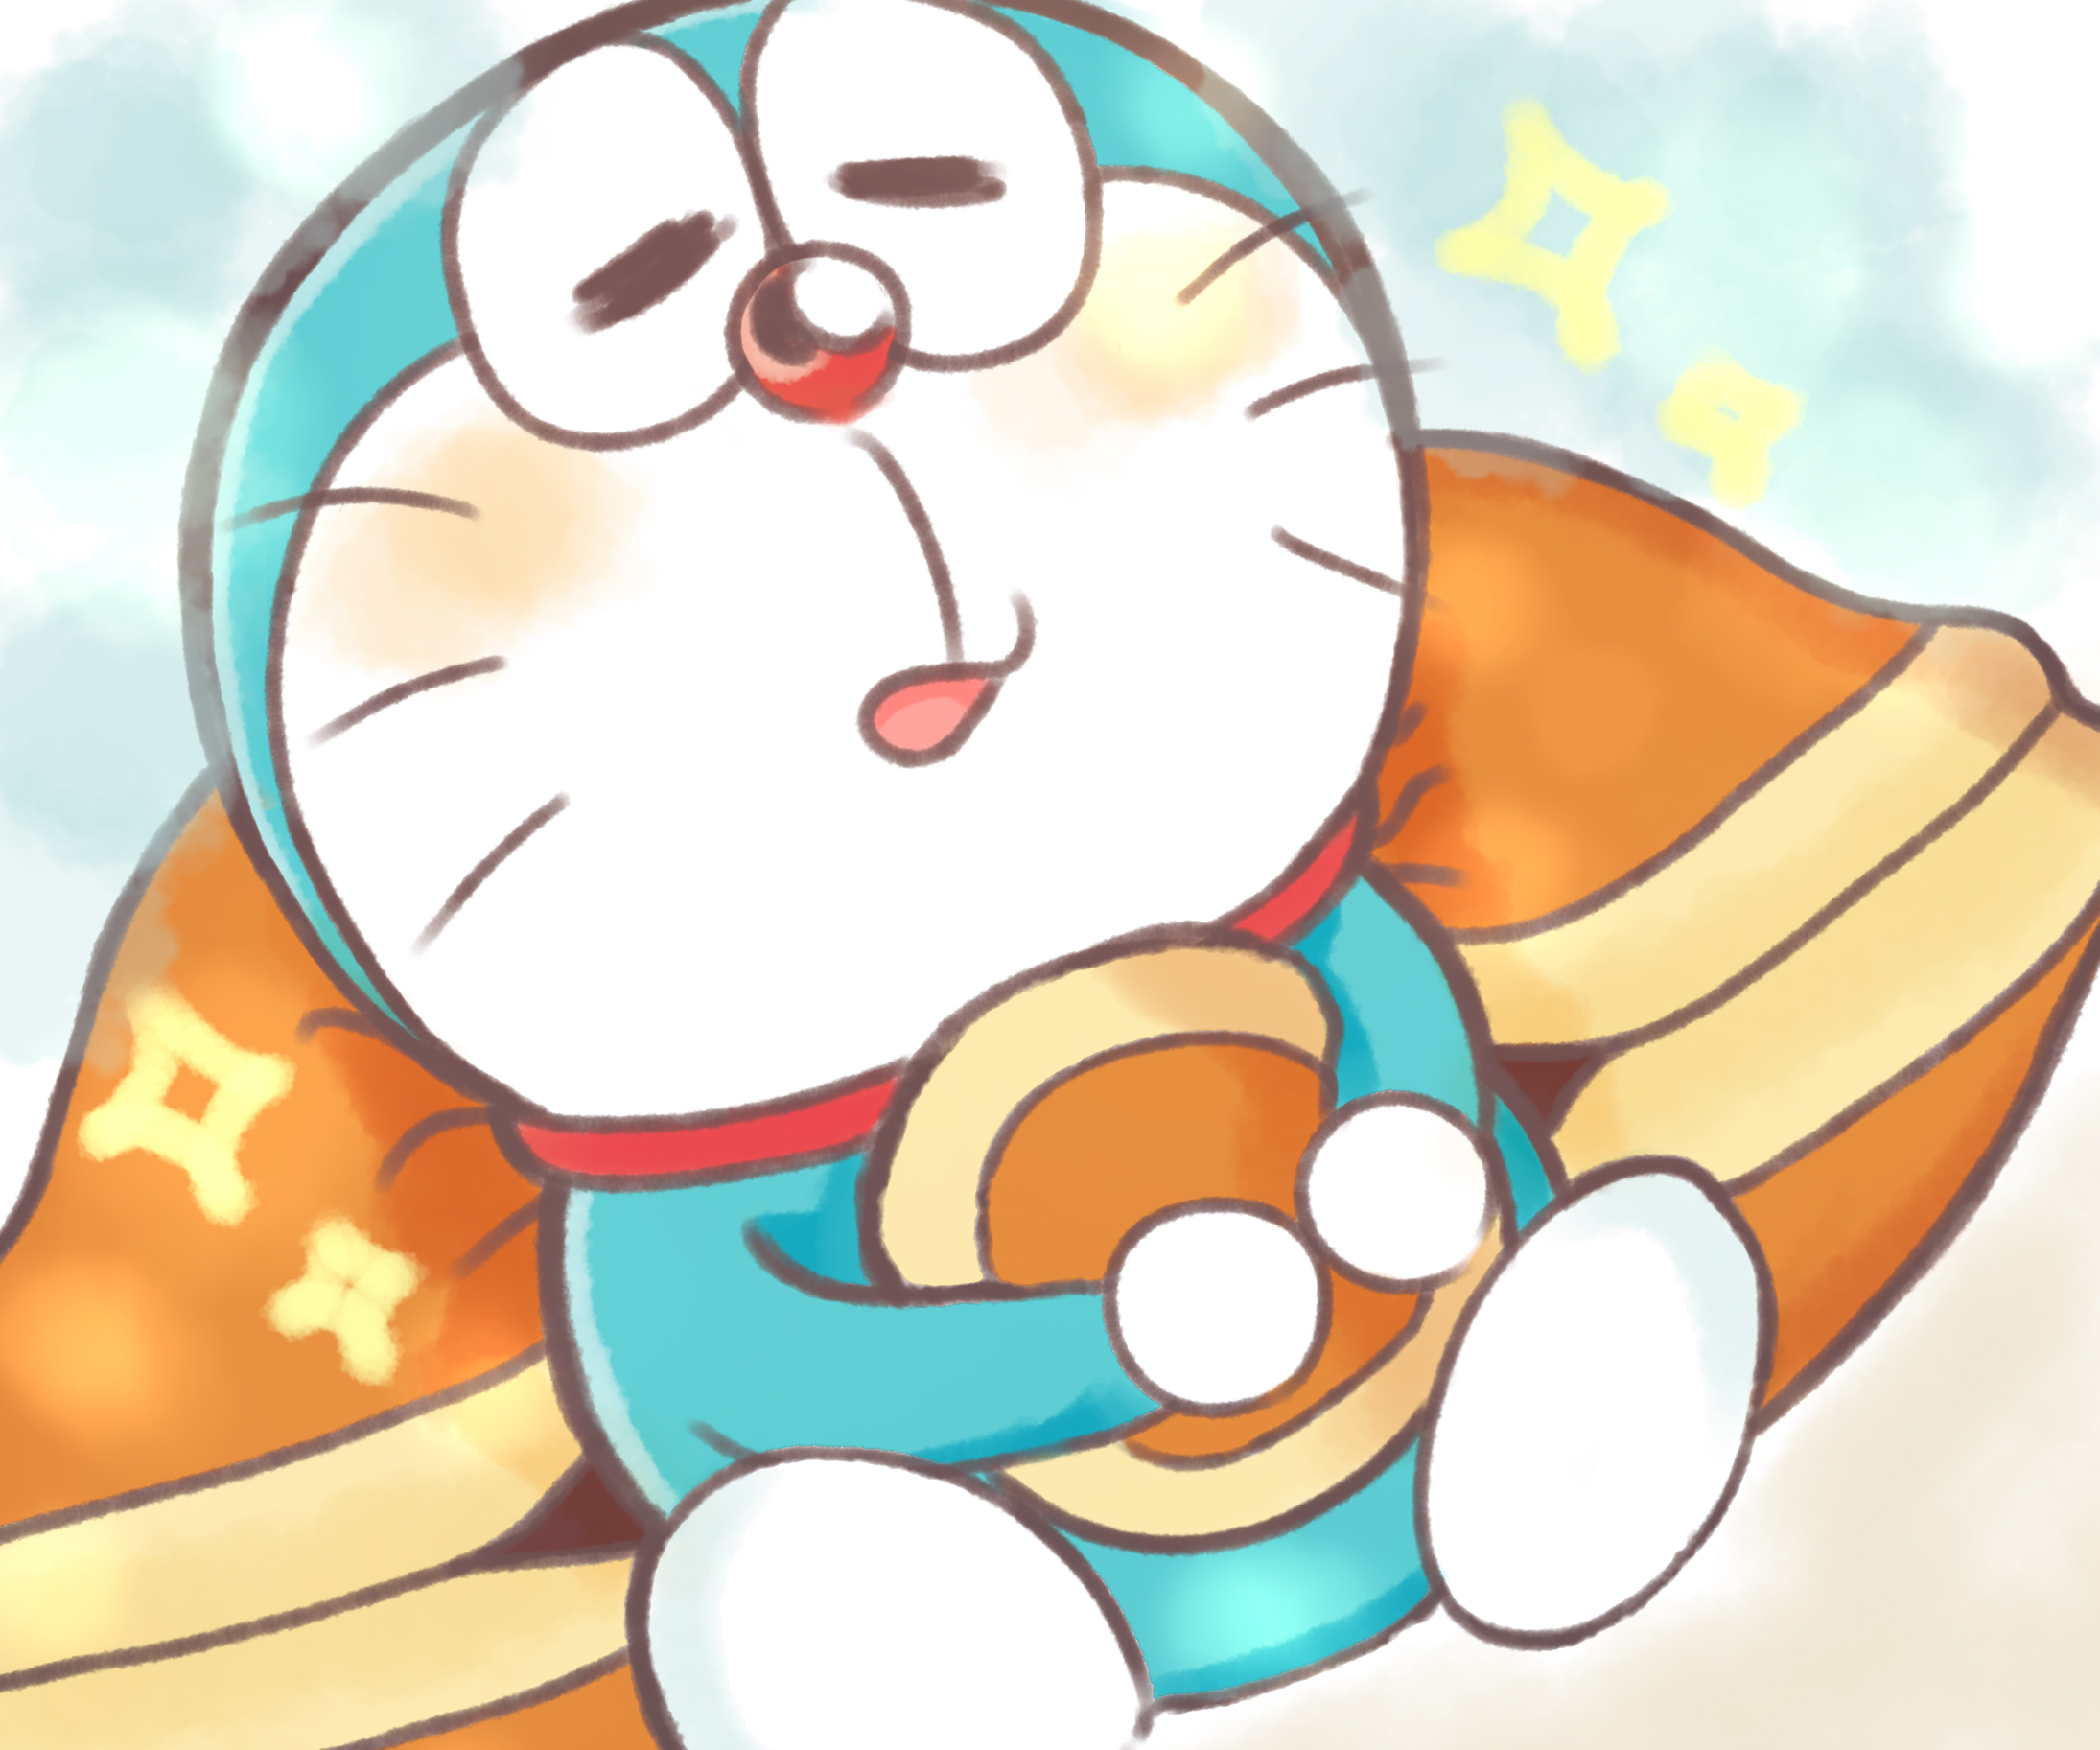 Bạn sẽ không thể tin được những hình vẽ Doraemon cute này có thể làm tan chảy trái tim bất kì ai. Hãy xem ngay để chiêm ngưỡng những tuyệt phẩm cực đáng yêu này.